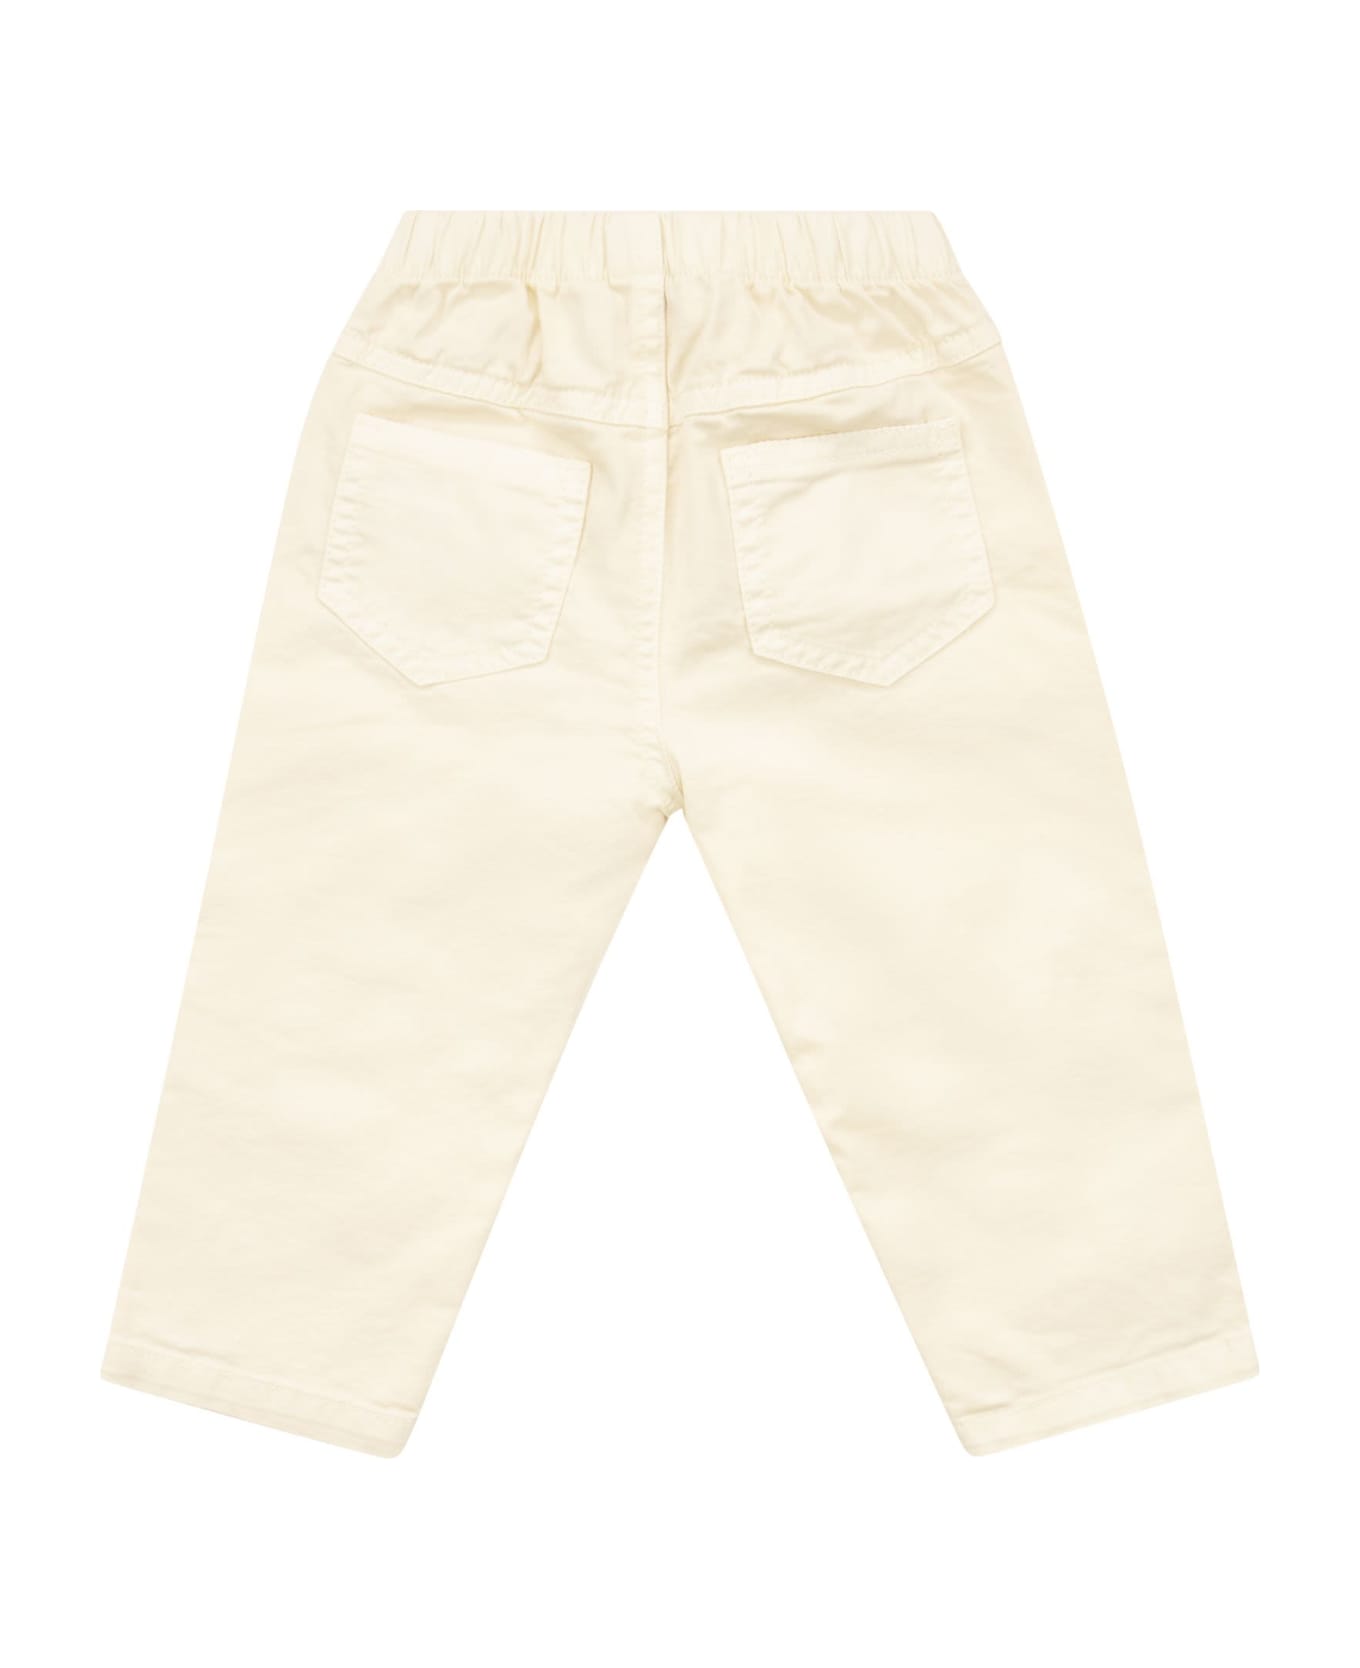 Il Gufo Cotton Trousers - Cream ボトムス